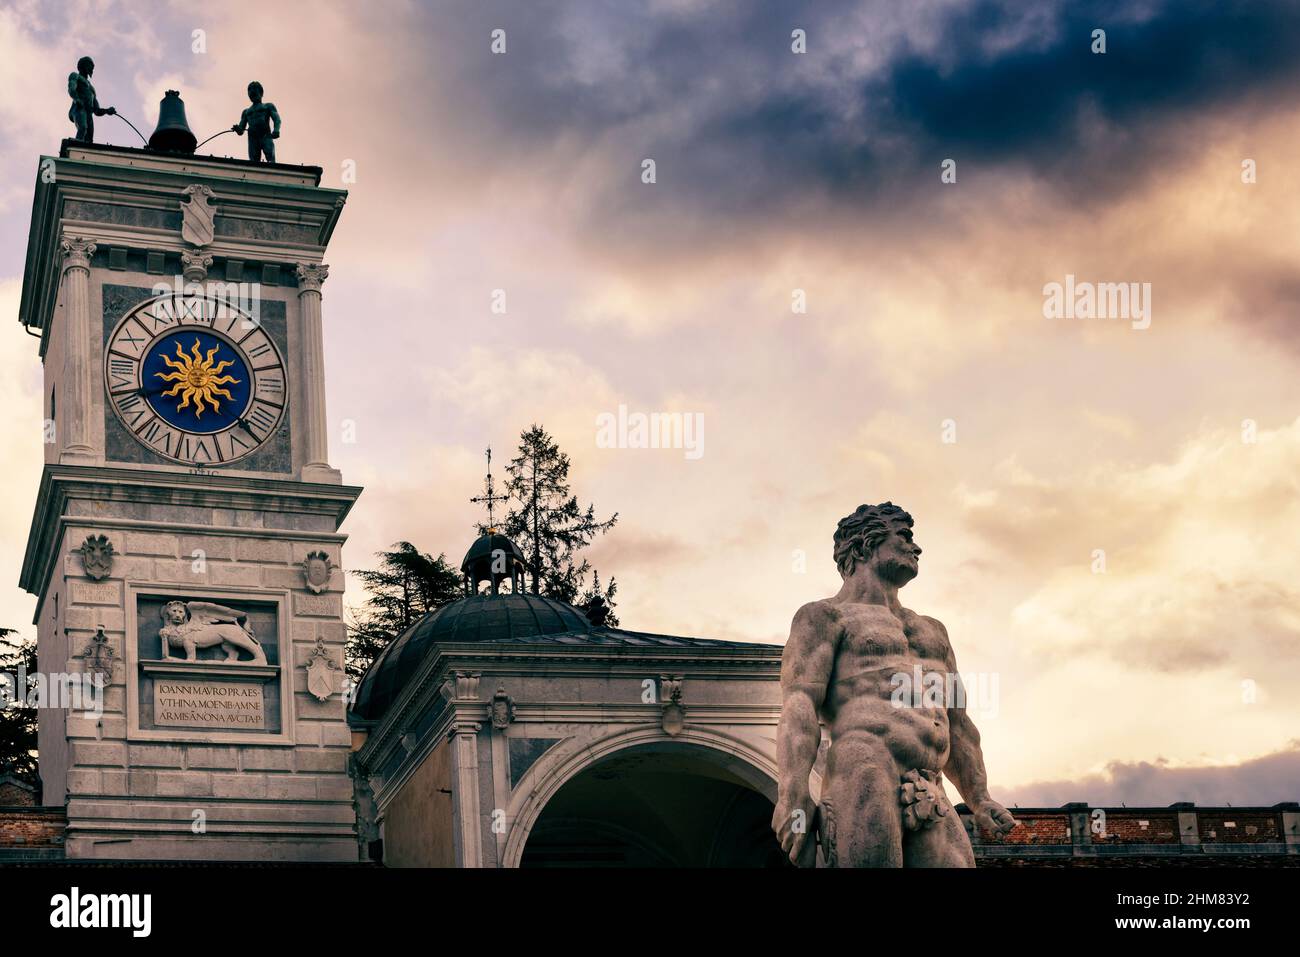 Herkules-Statue mit Uhrenturm im Hintergrund. Italienische klassische Kunst und Architektur unter einem schönen Himmel. Udine, Friaul Julisch Venetien, Italien. Stockfoto